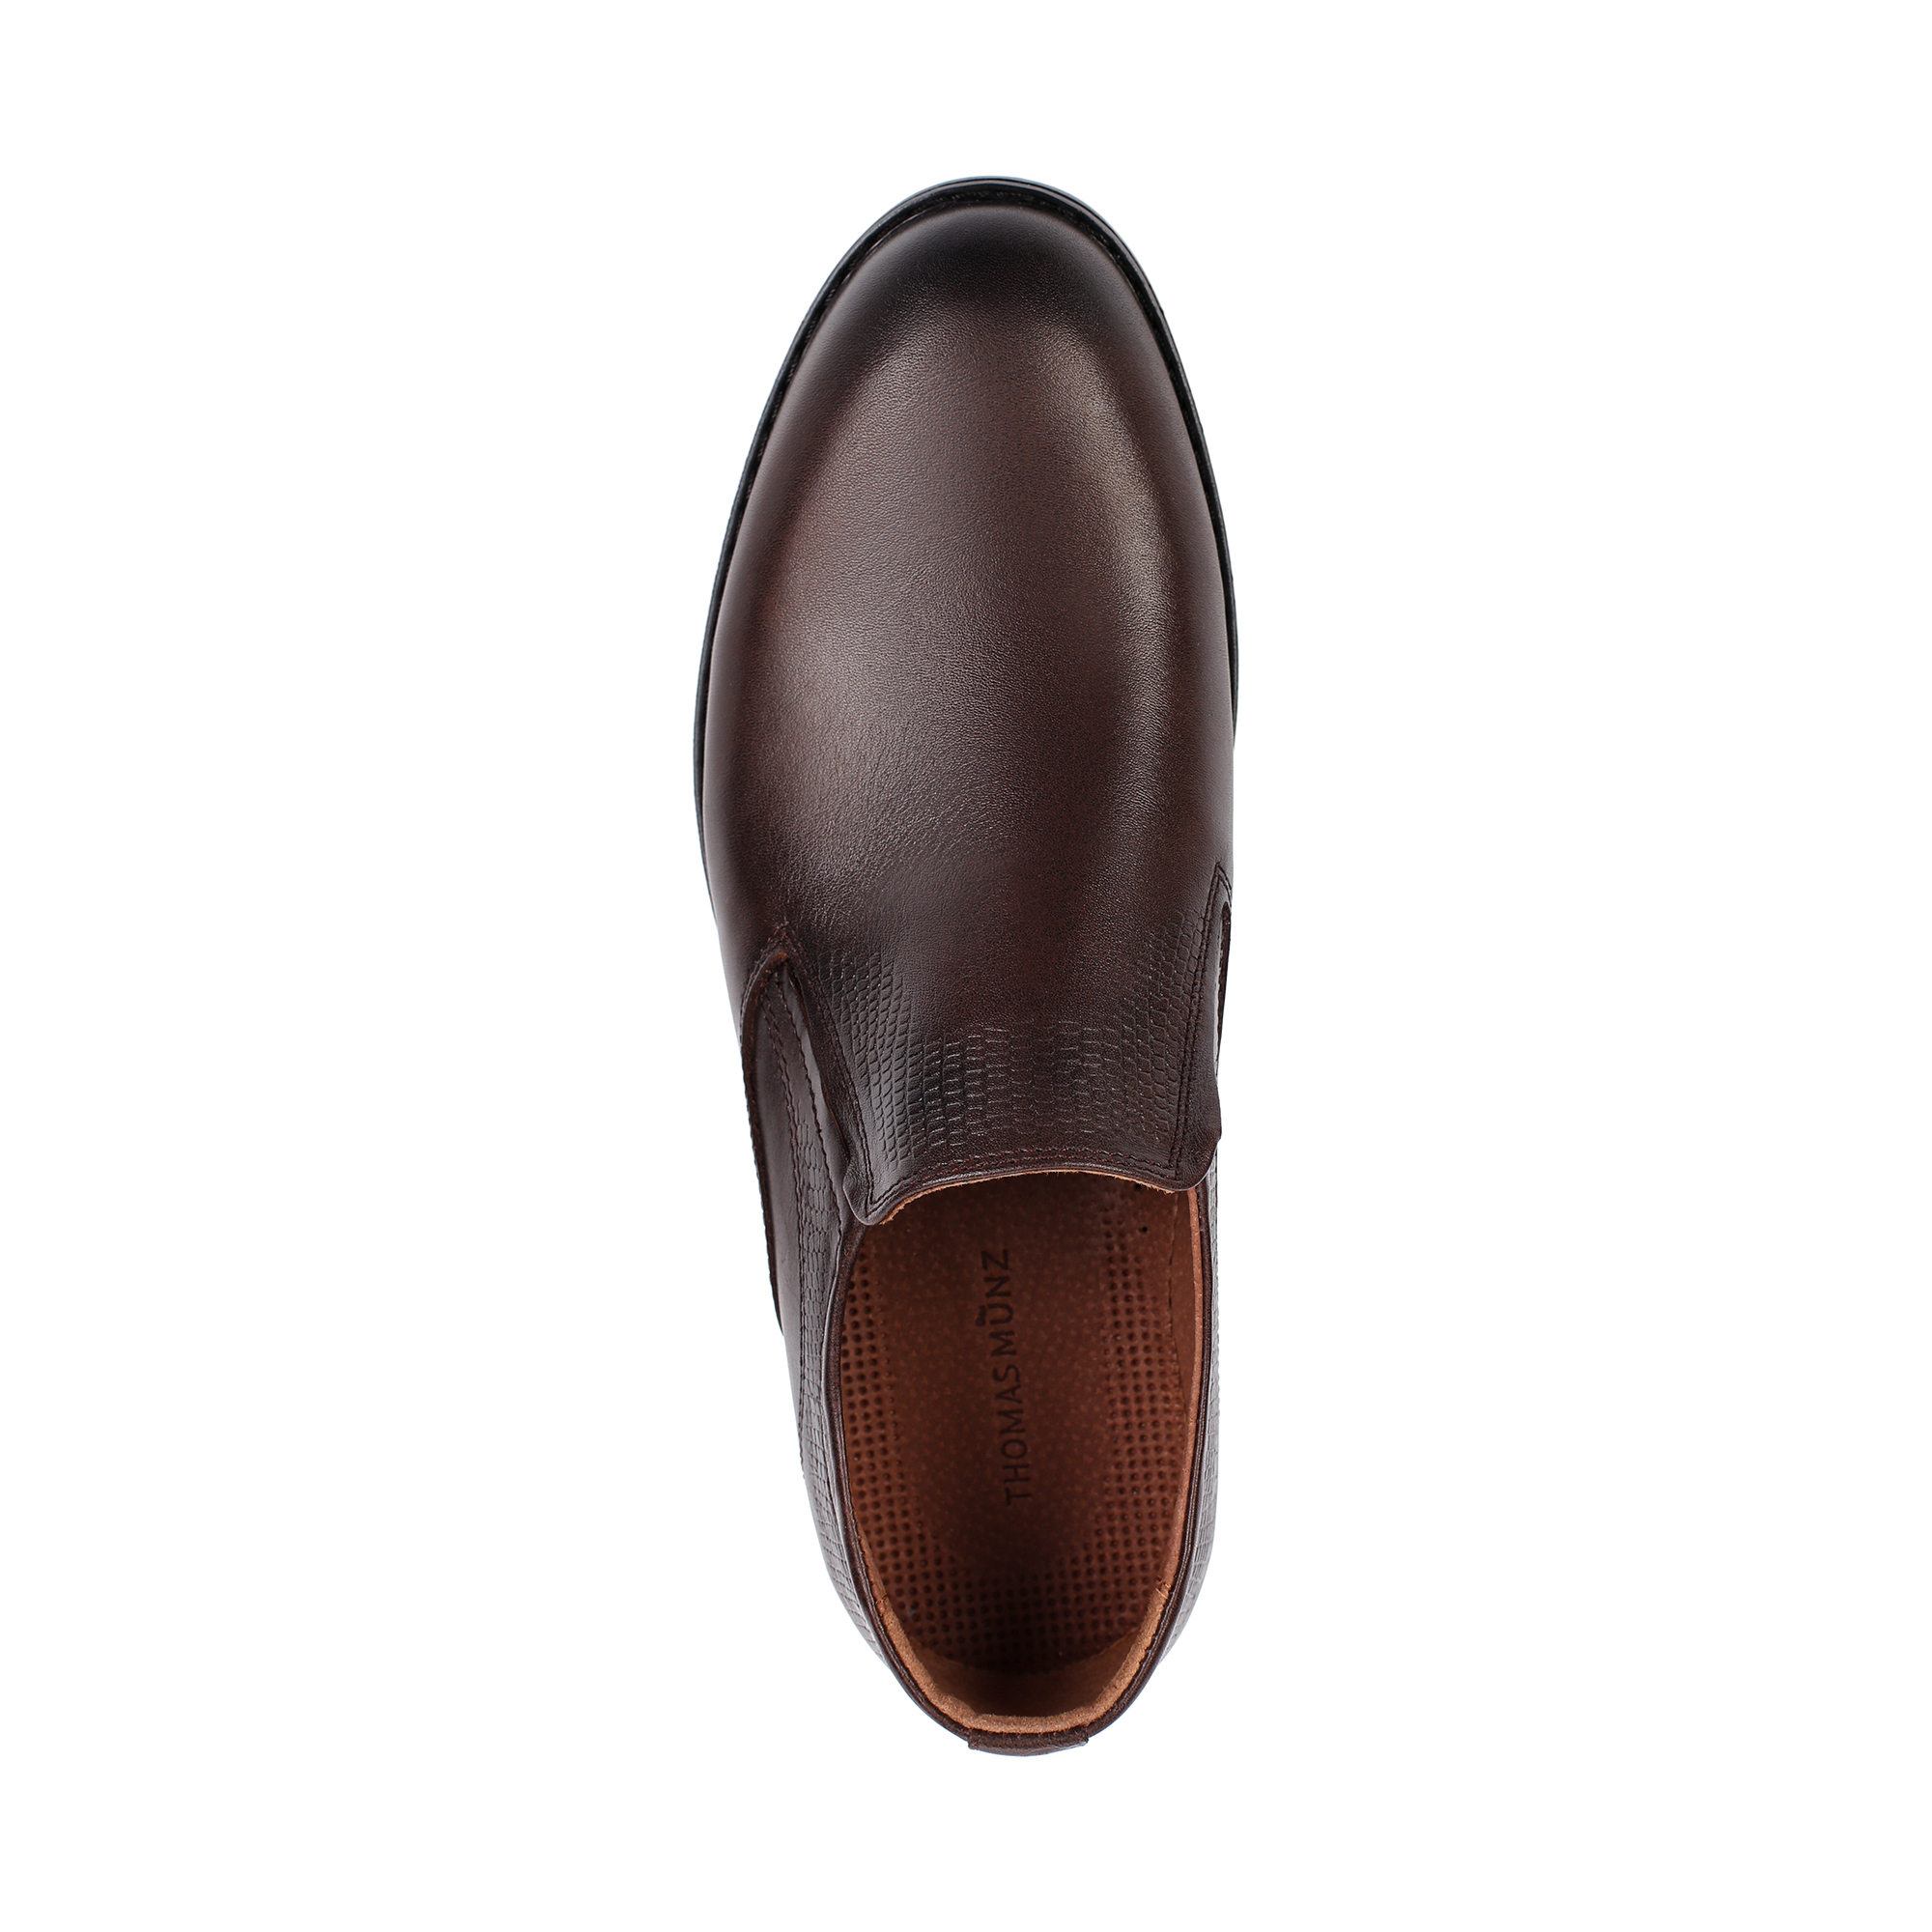 Туфли/полуботинки Thomas Munz 302-040C-1109, цвет коричневый, размер 41 - фото 5